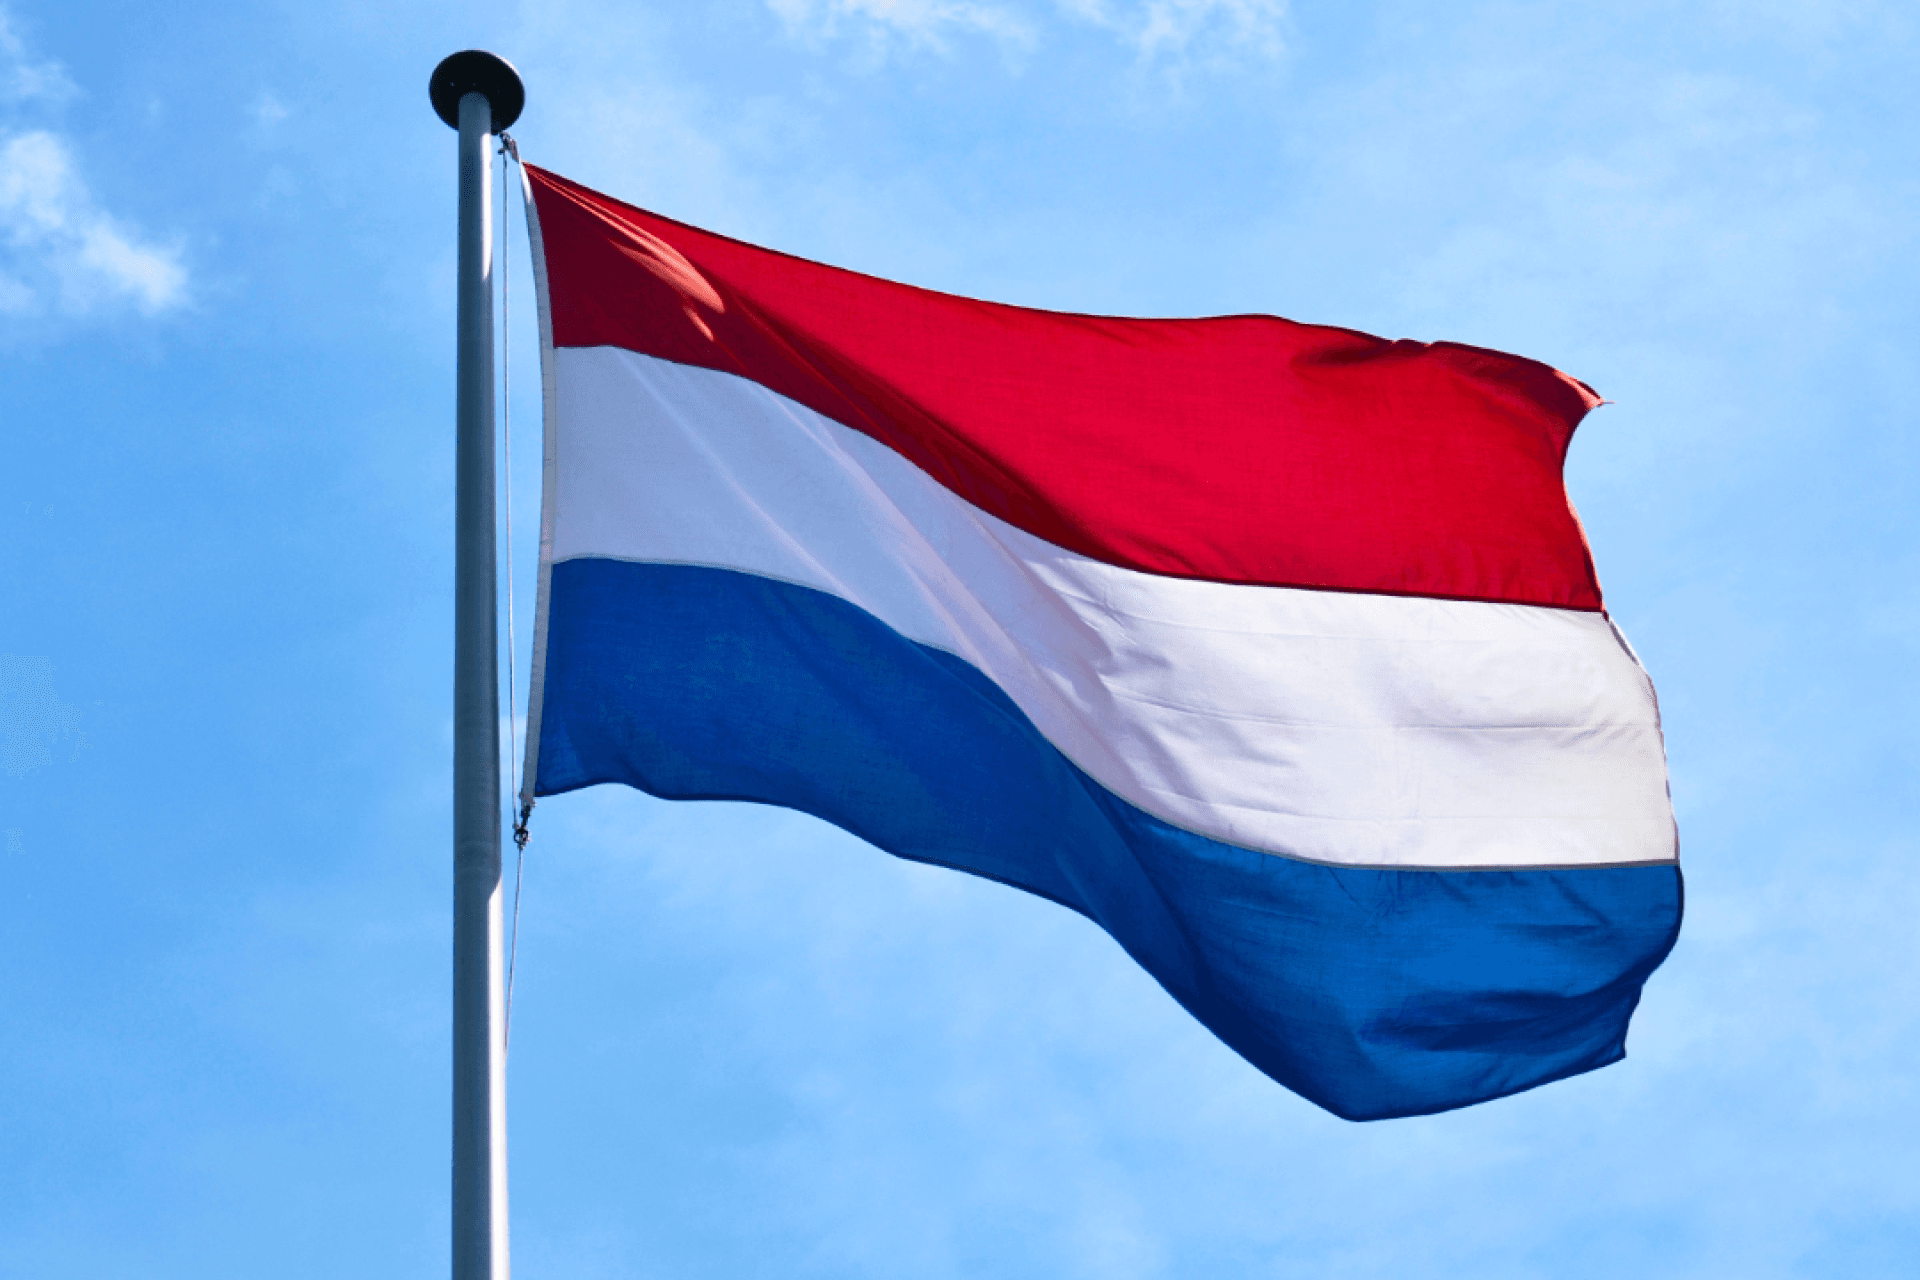 Nederlandse vlag rood wit blauw wappert in wind